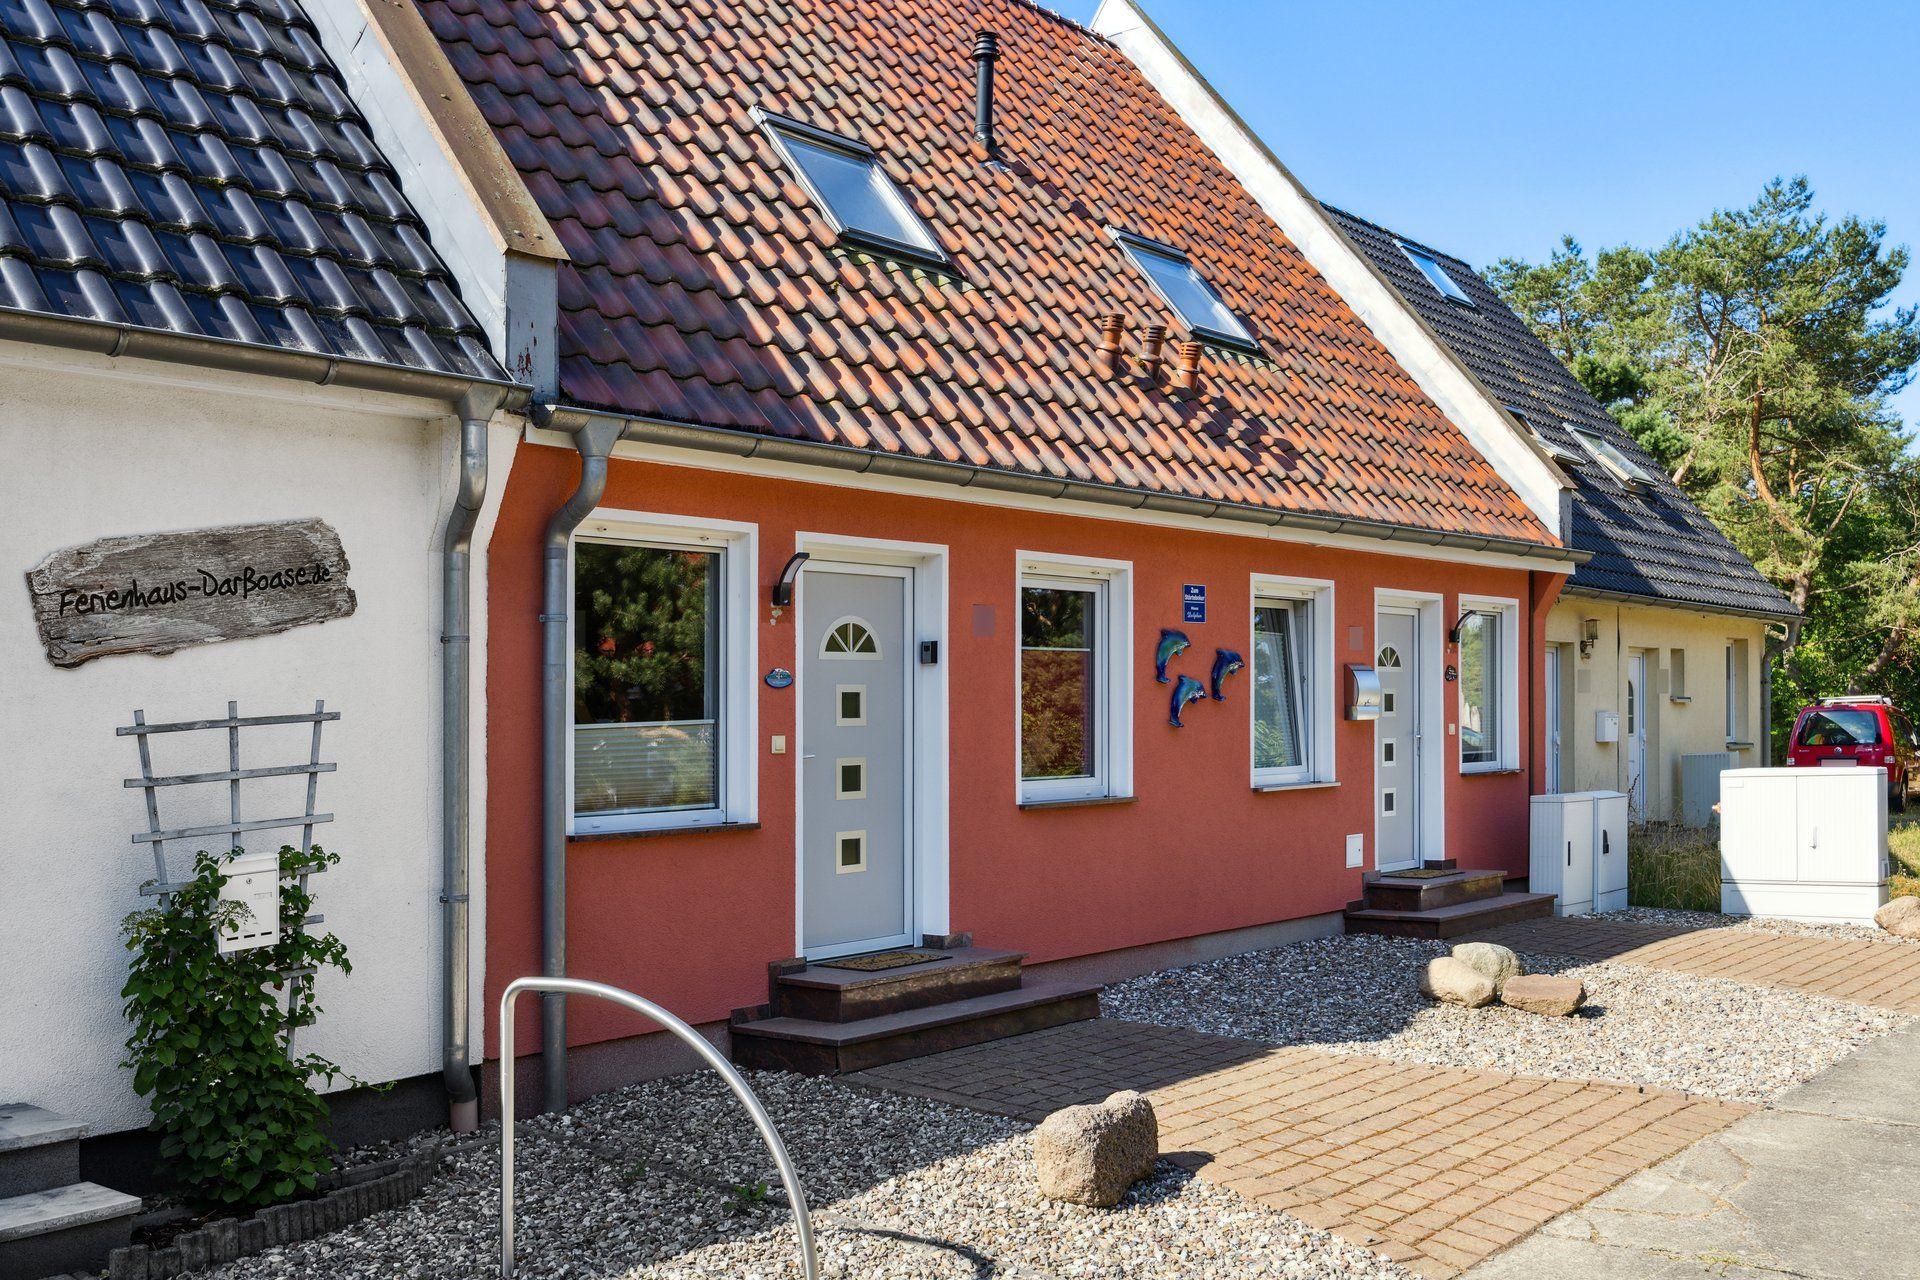 Ferienhaus in Pruchten mit Terrasse, Grill und Gar  in Europa